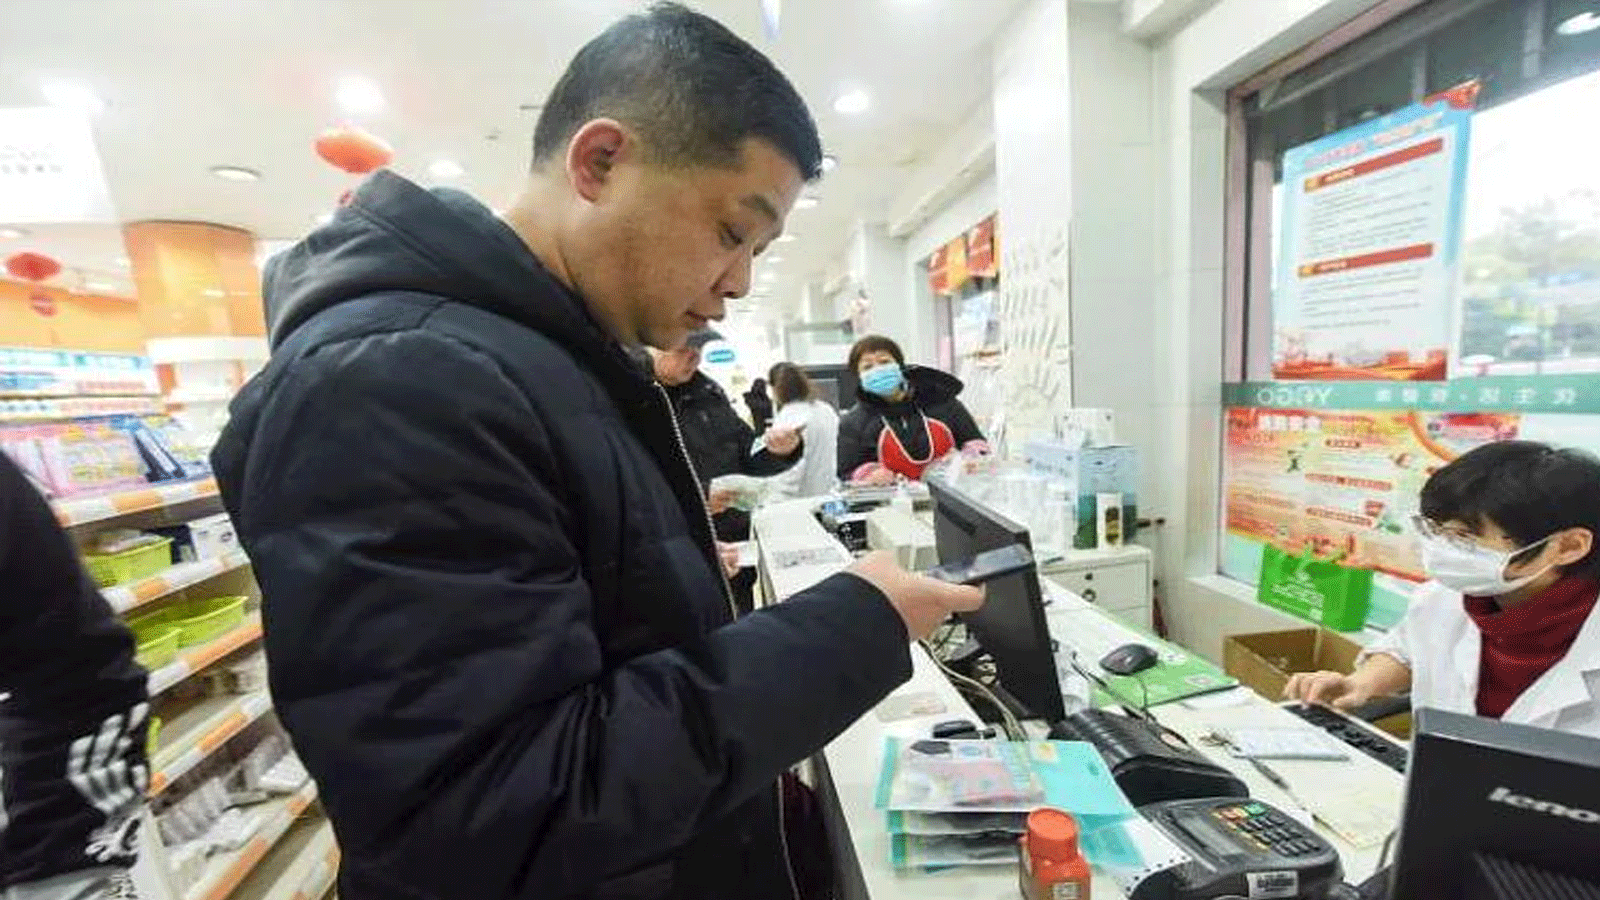 أشخاص يشترون الإمدادات الطبية من صيدلية في هانغتشو بمقاطعة تشجيانغ بشرق الصين